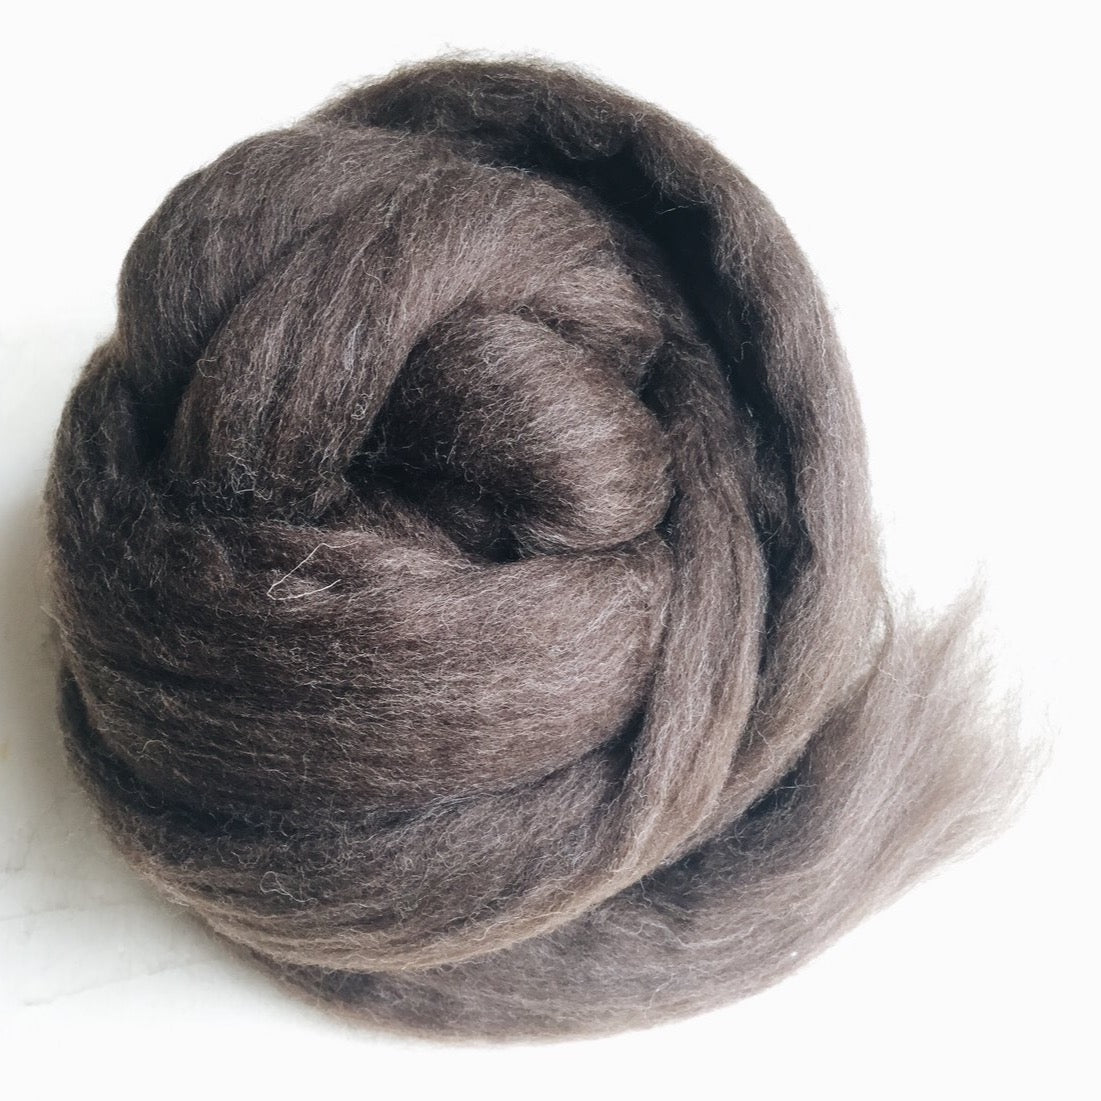 Portuguese merino wool top - Natural brown